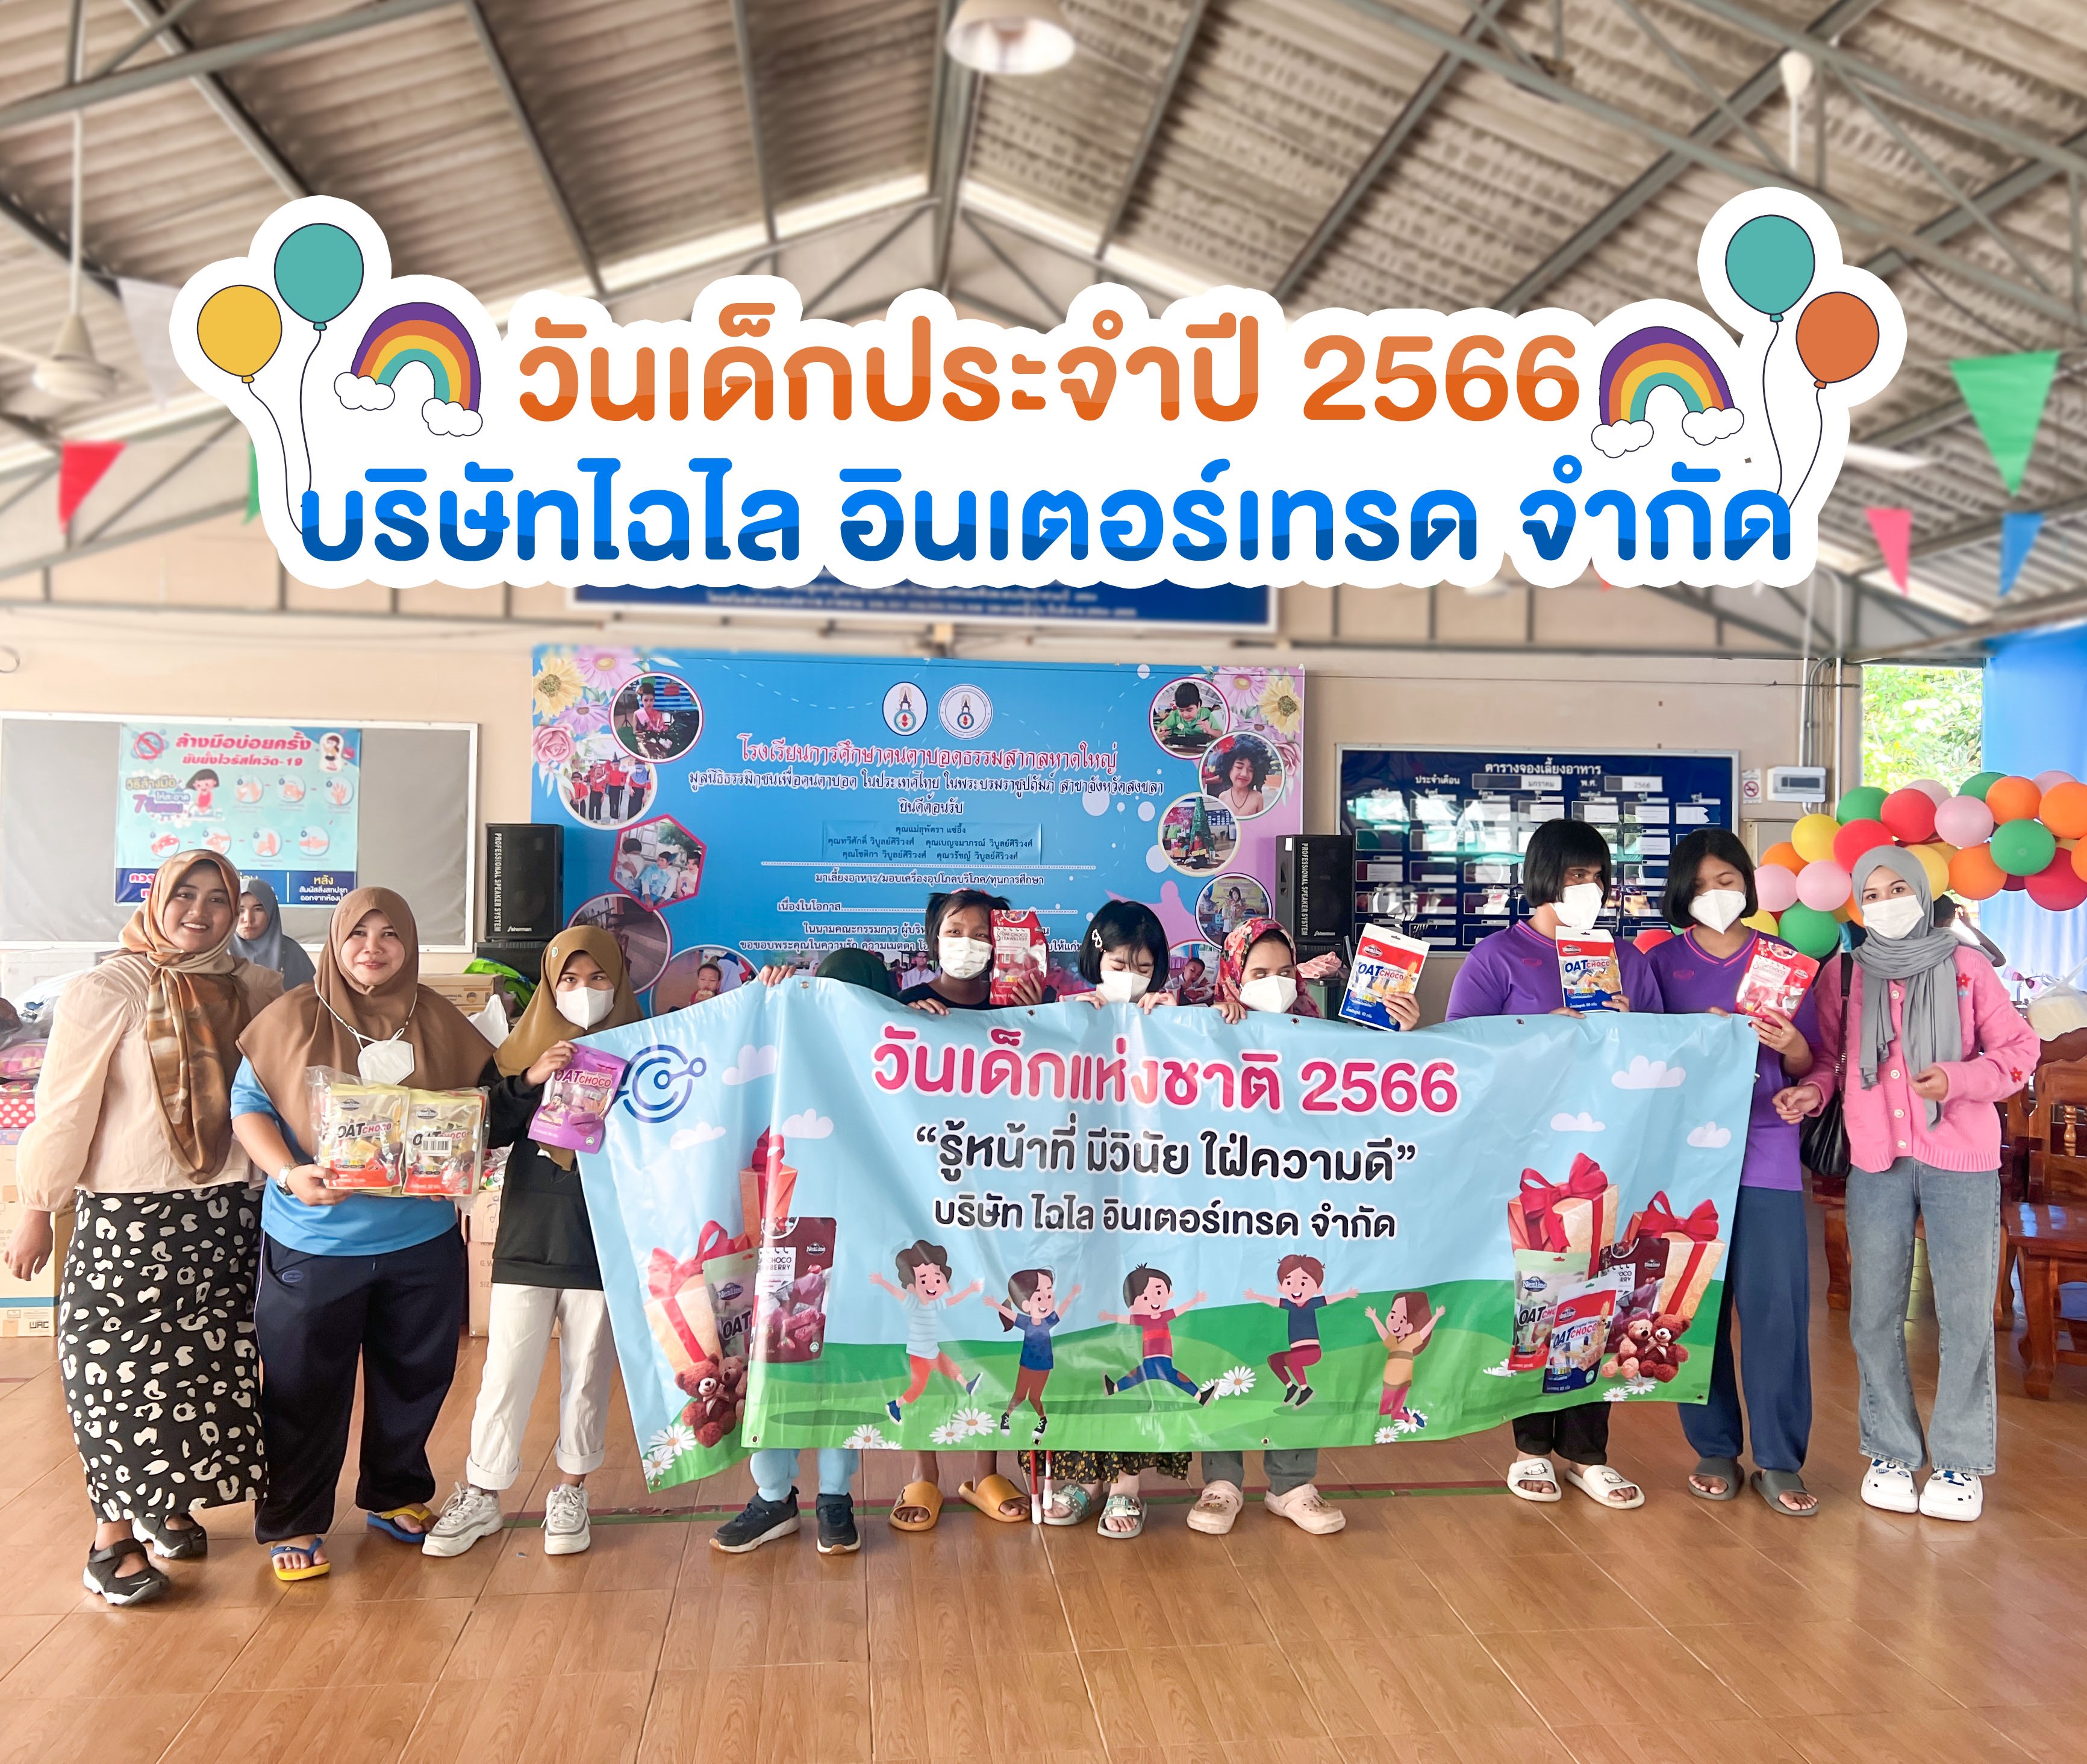 มอบสิ่งของสนับสนุนกิจกรรมวันเด็กแห่งชาติ ประจำปี 2566 ณ โรงเรียนการศึกษาคนตาบอดธรรมสากล